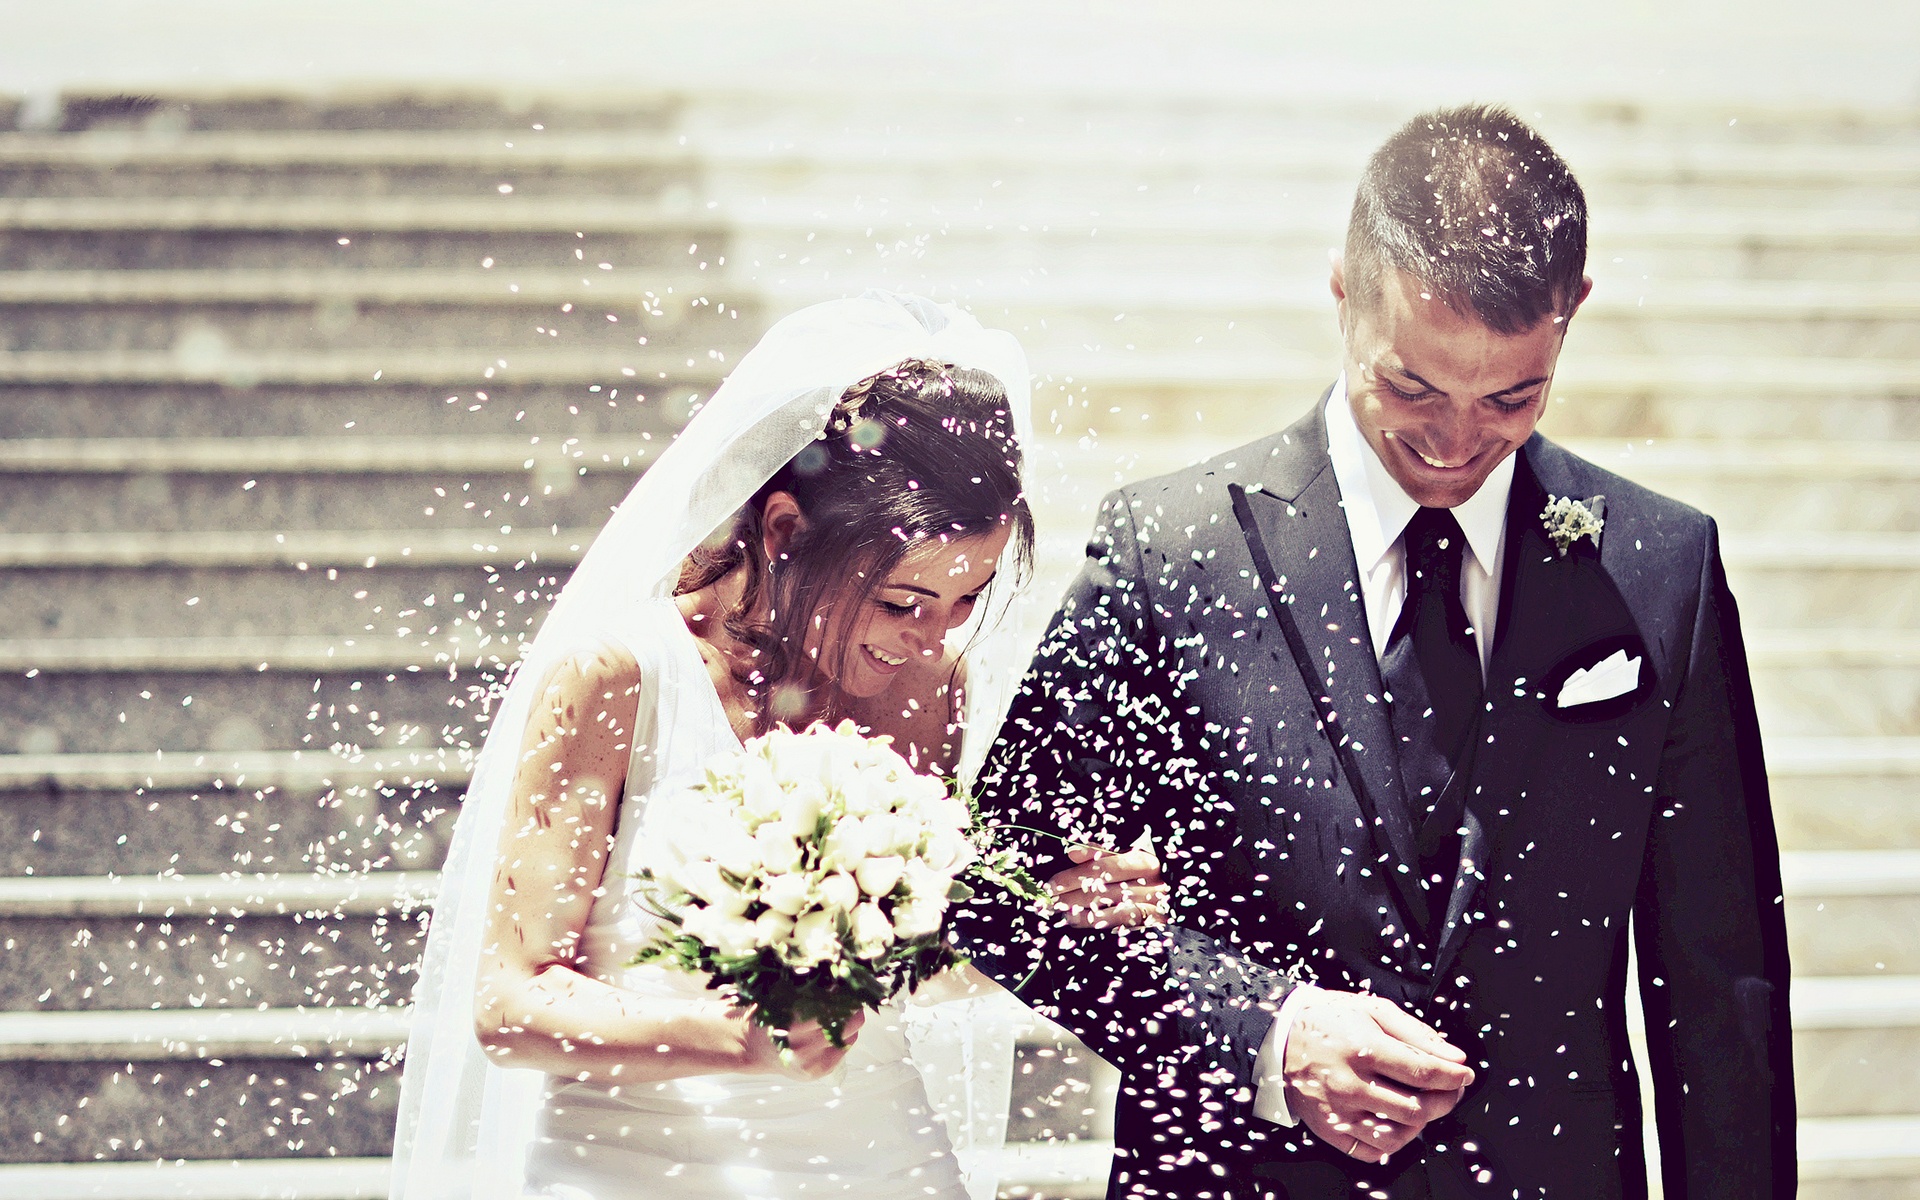 İkinci evliliklerini yapanlara düğün yasağı